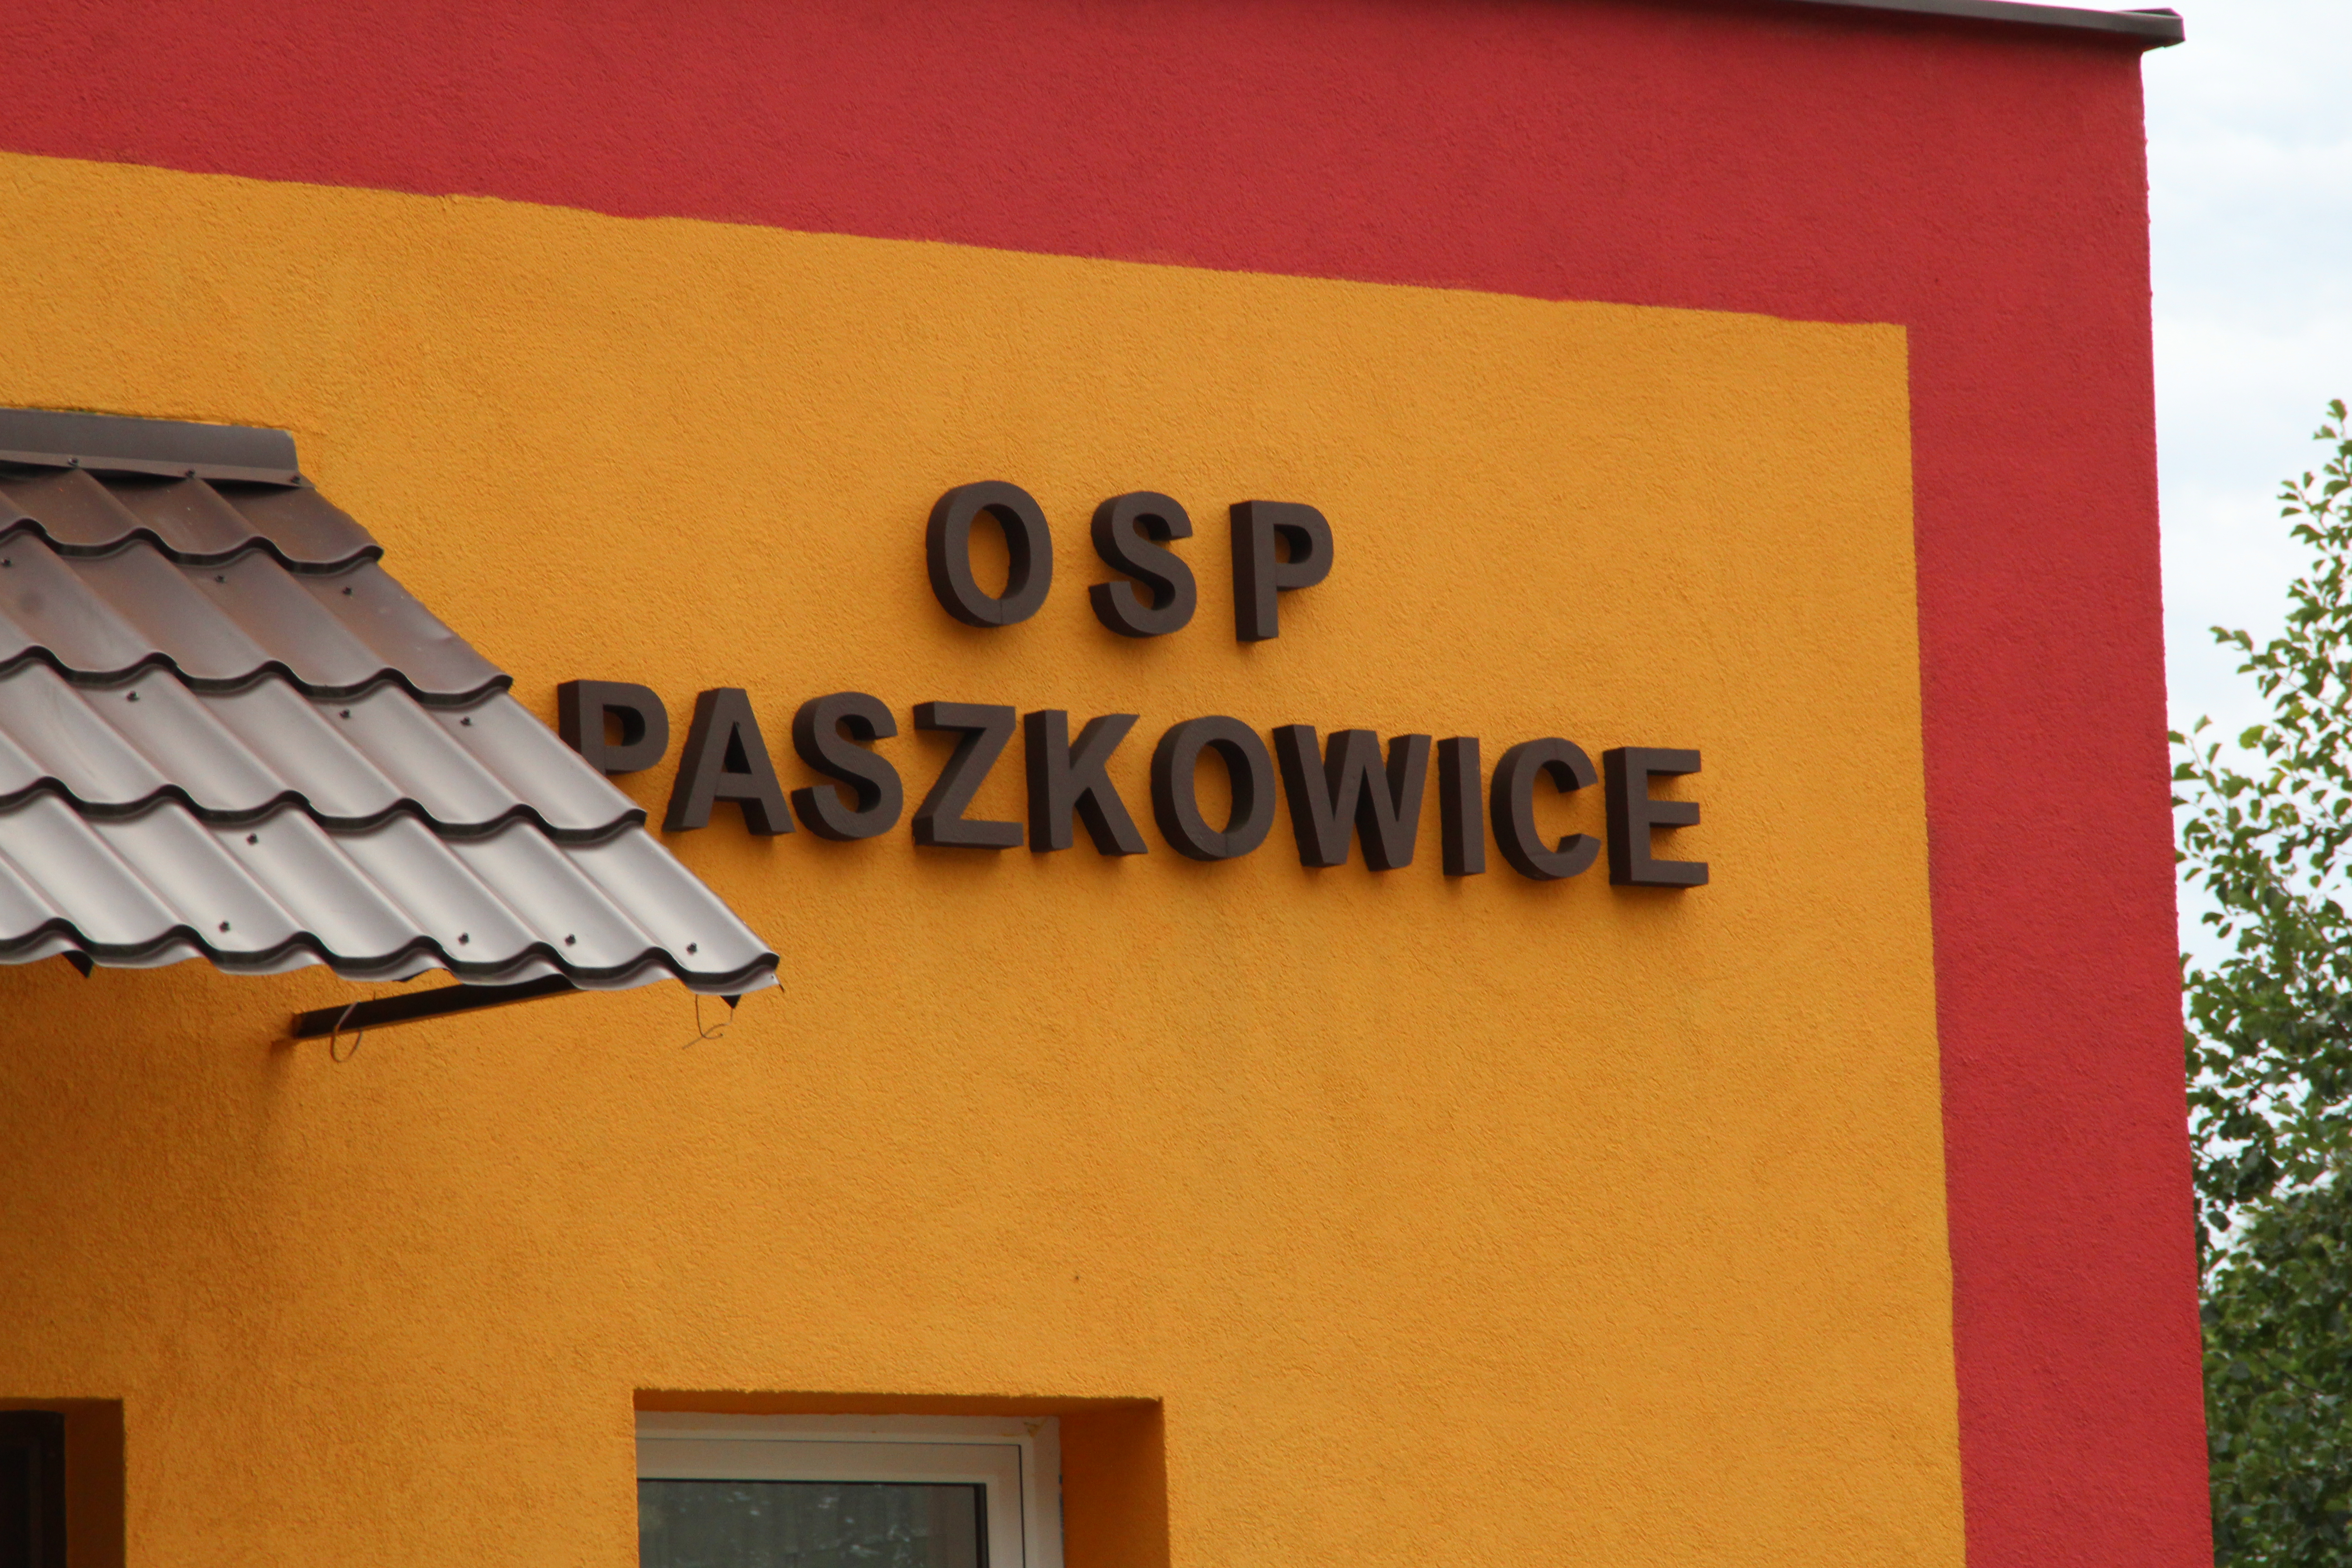 OSP Paszkowice